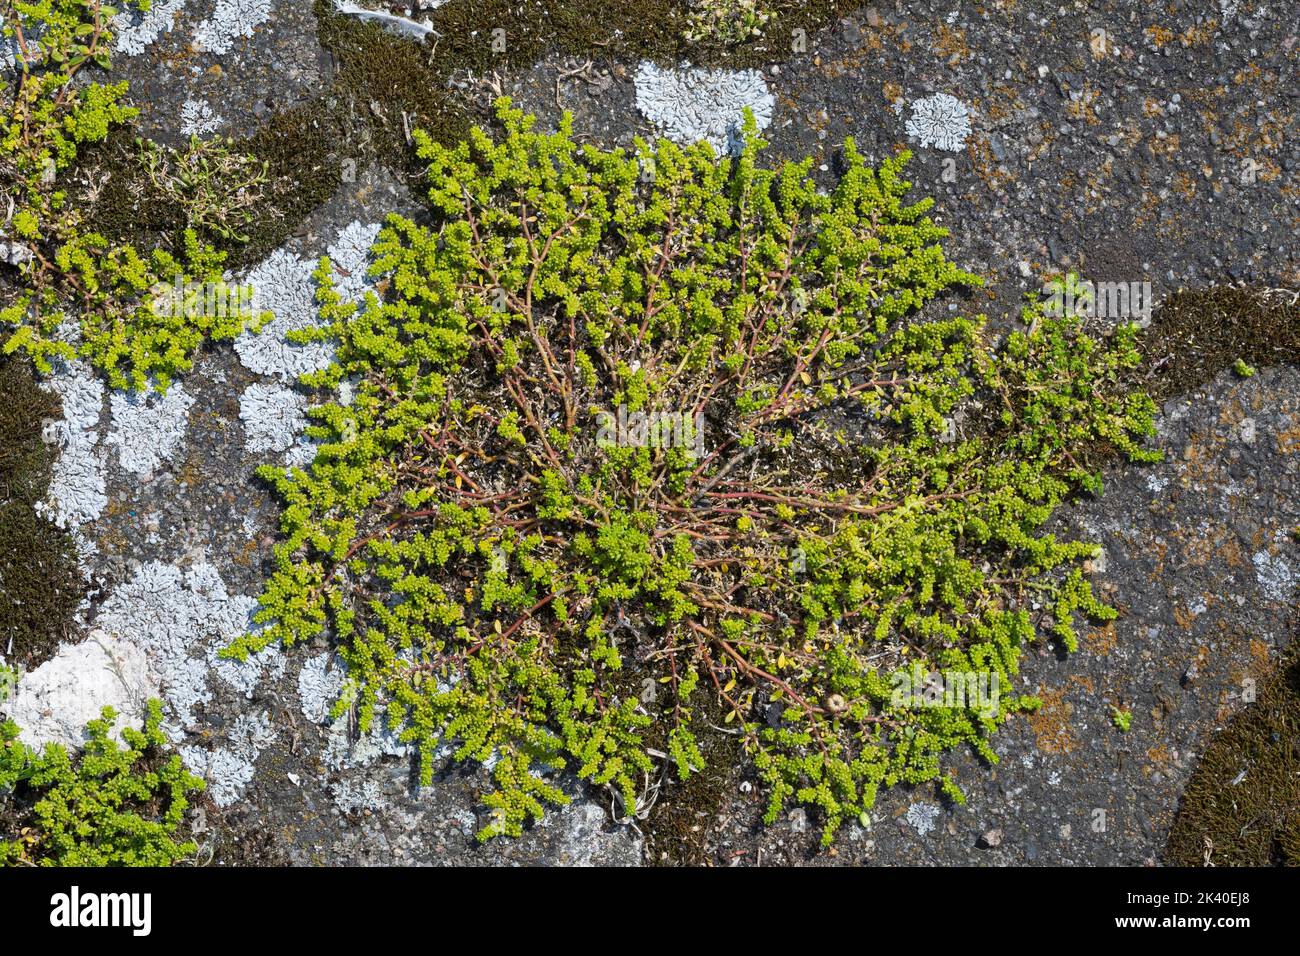 Rupturewort liso, burstwort liso (Herniaria glabra), creciendo en un pavimento, Alemania Foto de stock